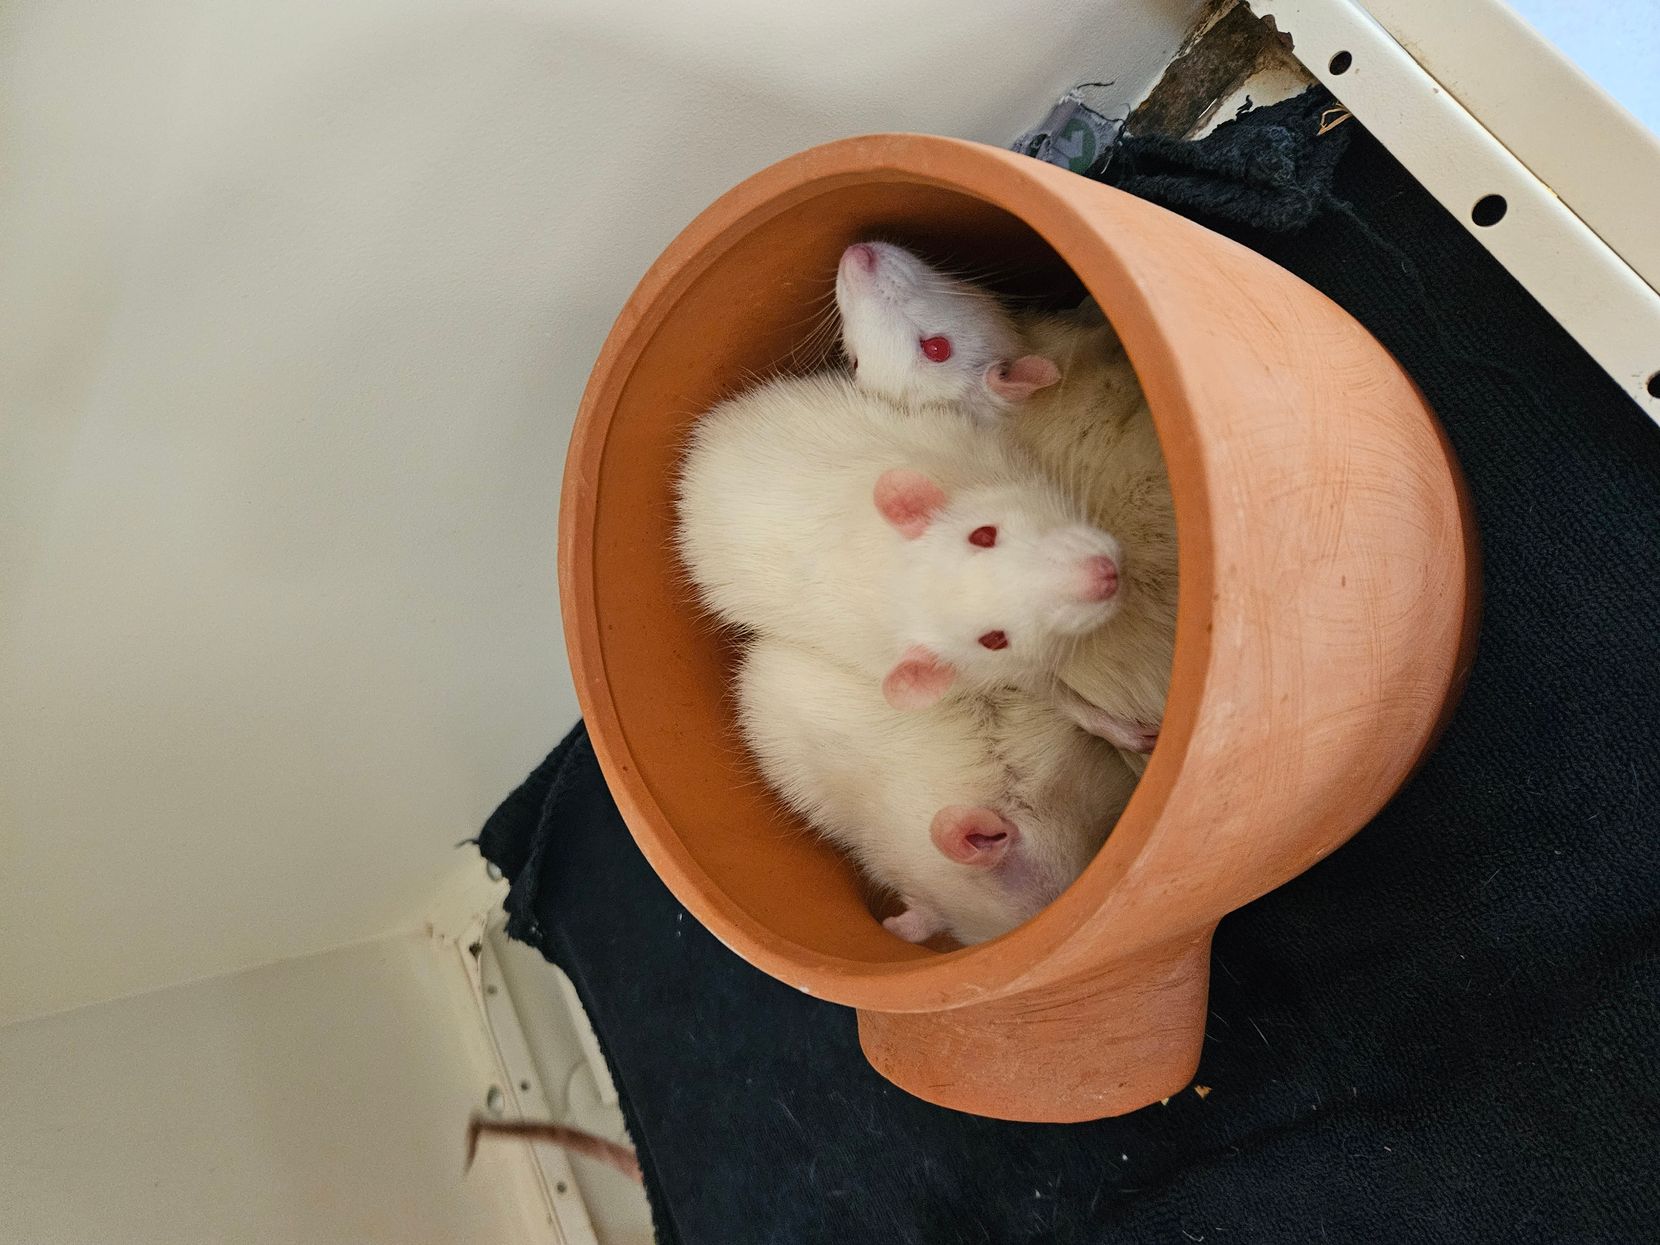 Man sieht mehrere weisse Ratten in einem Tonkrug sitzen.